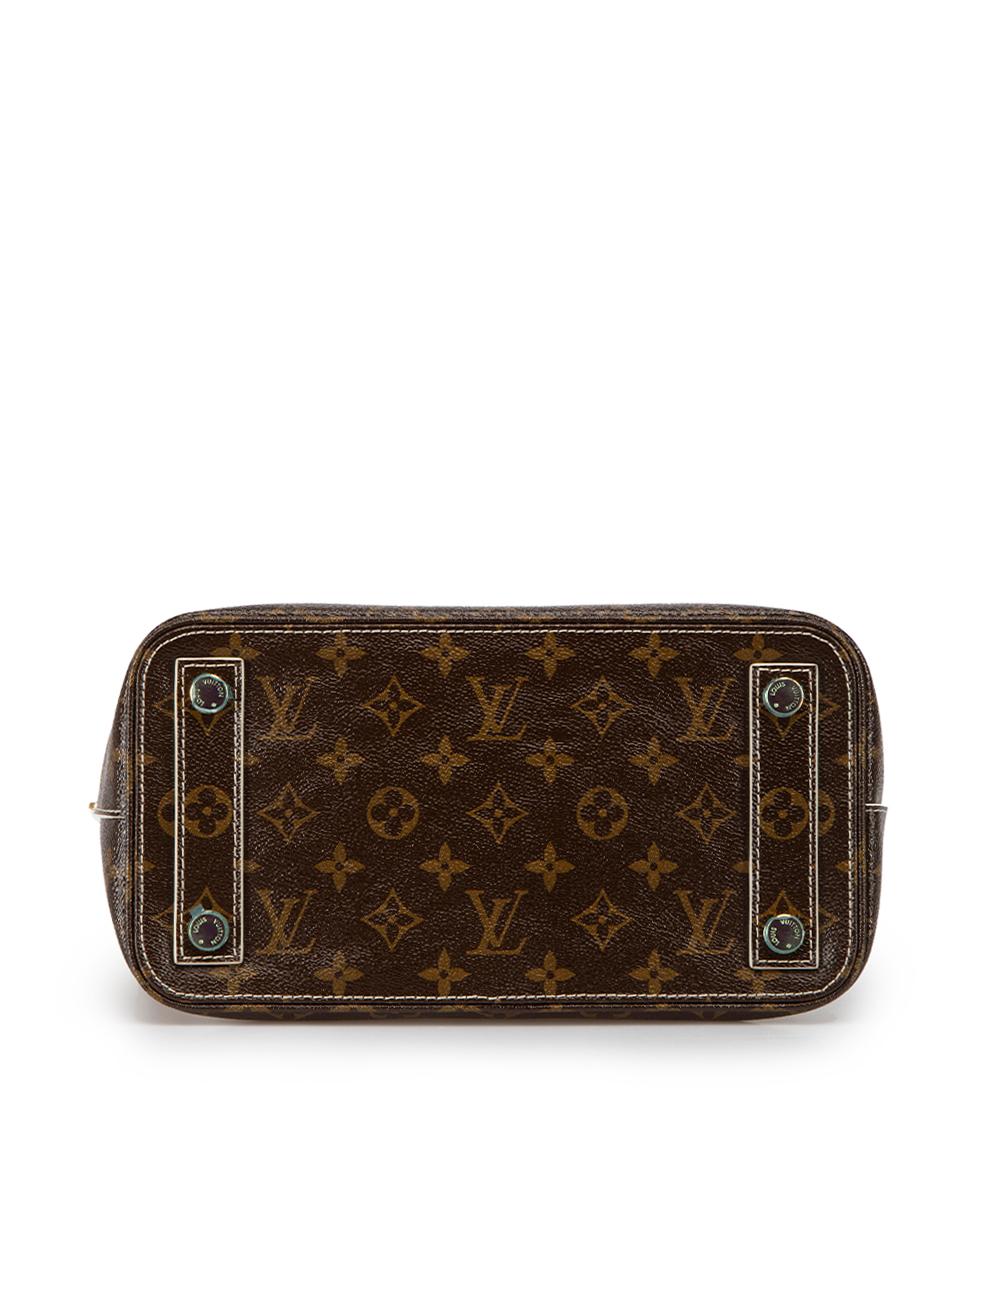 Louis Vuitton Women's 2011 Brown Leather Monogram Fetish Lockit Handbag 1